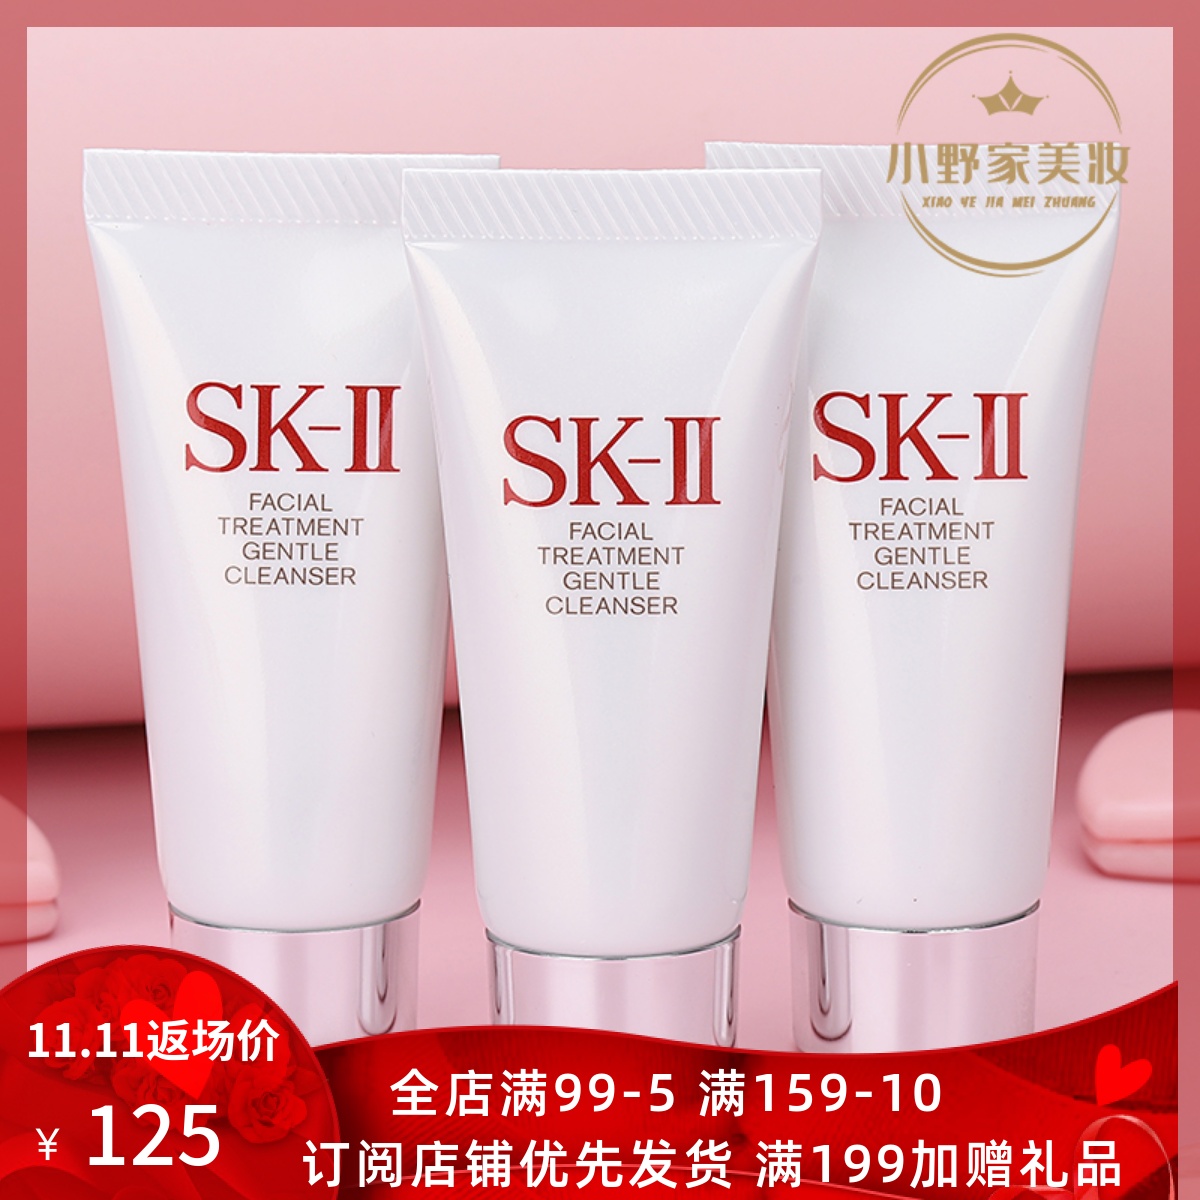 日本顶级护肤品牌，藏着日系护肤的秘密 | 哈啰日本